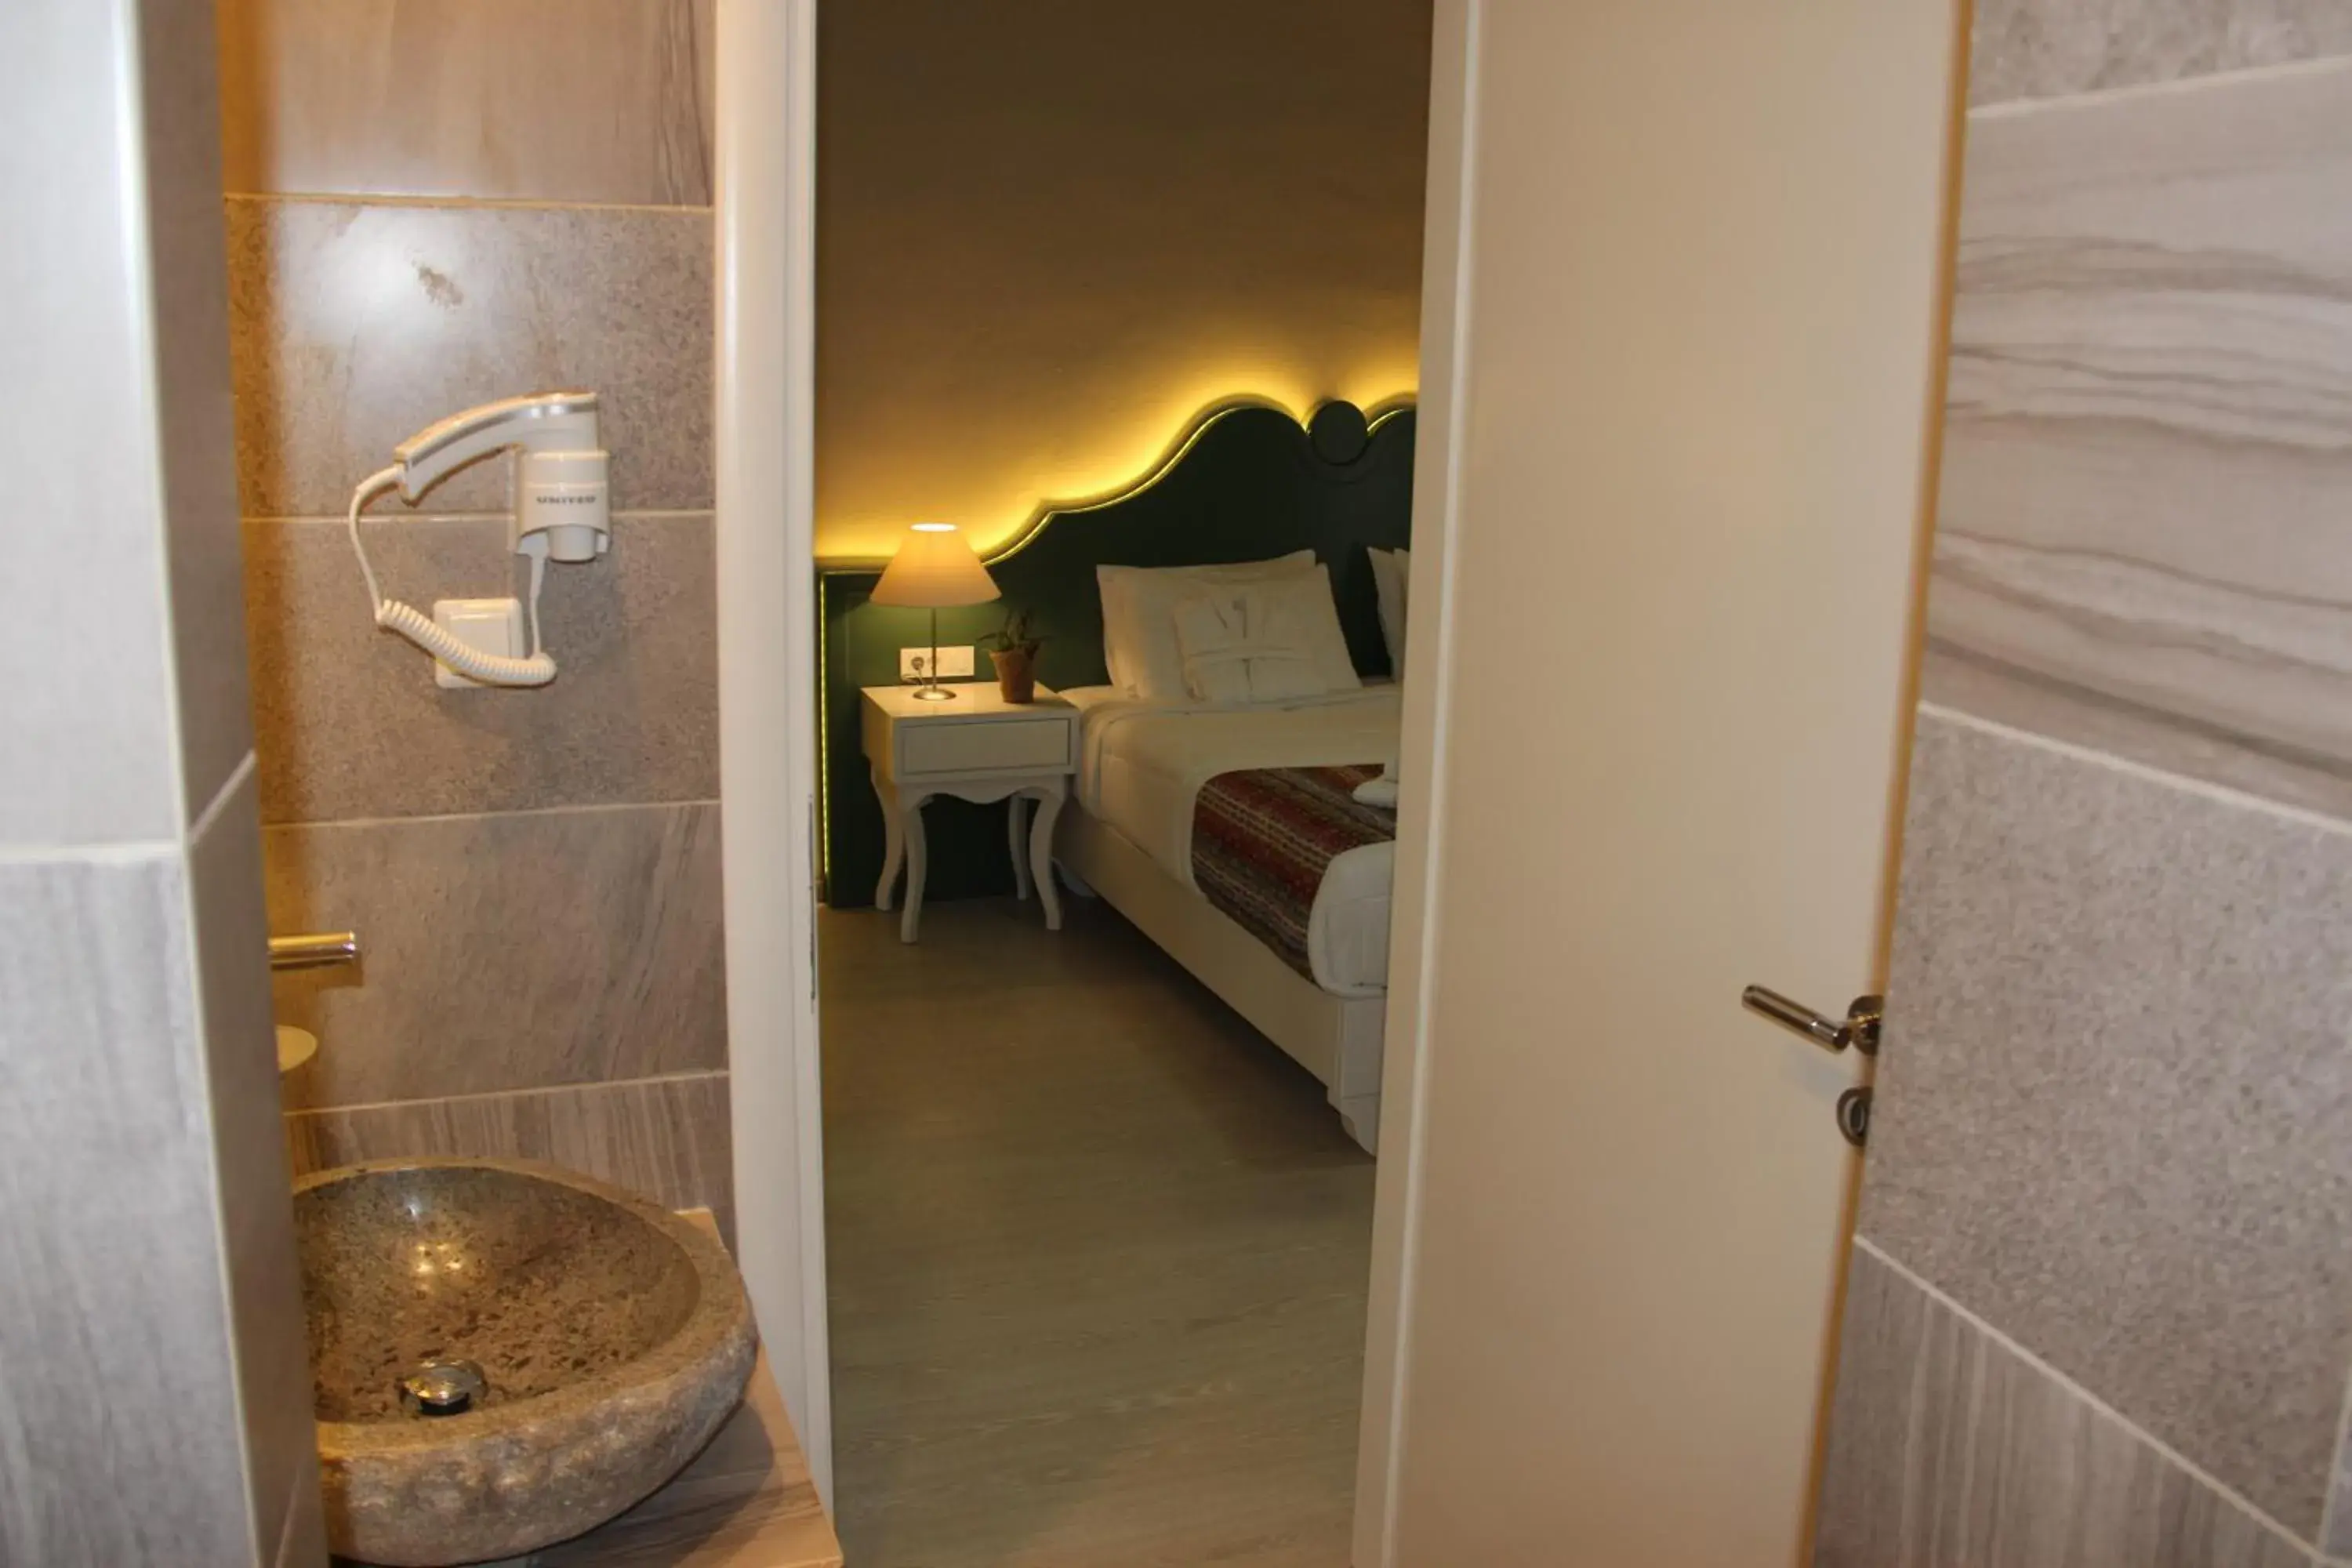 Area and facilities, Bathroom in Elia Palazzo Hotel